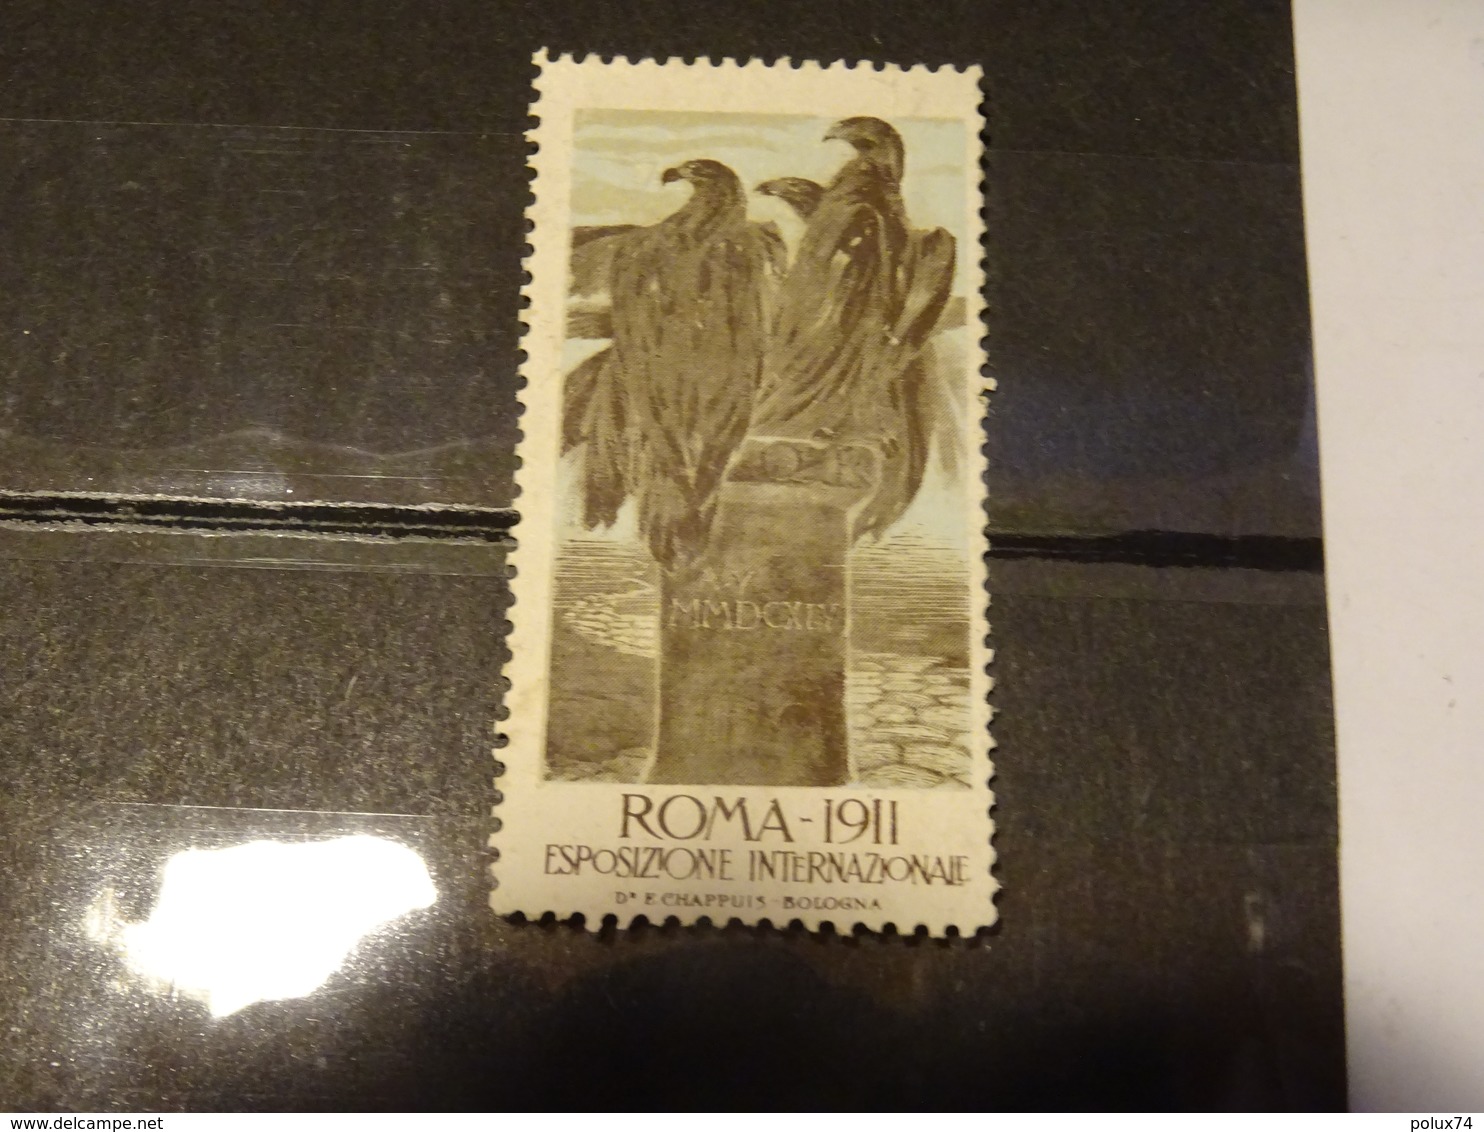 ITALIE   Vignette ROMA 1911 EXPOS INTERNATIONALE - Revenue Stamps